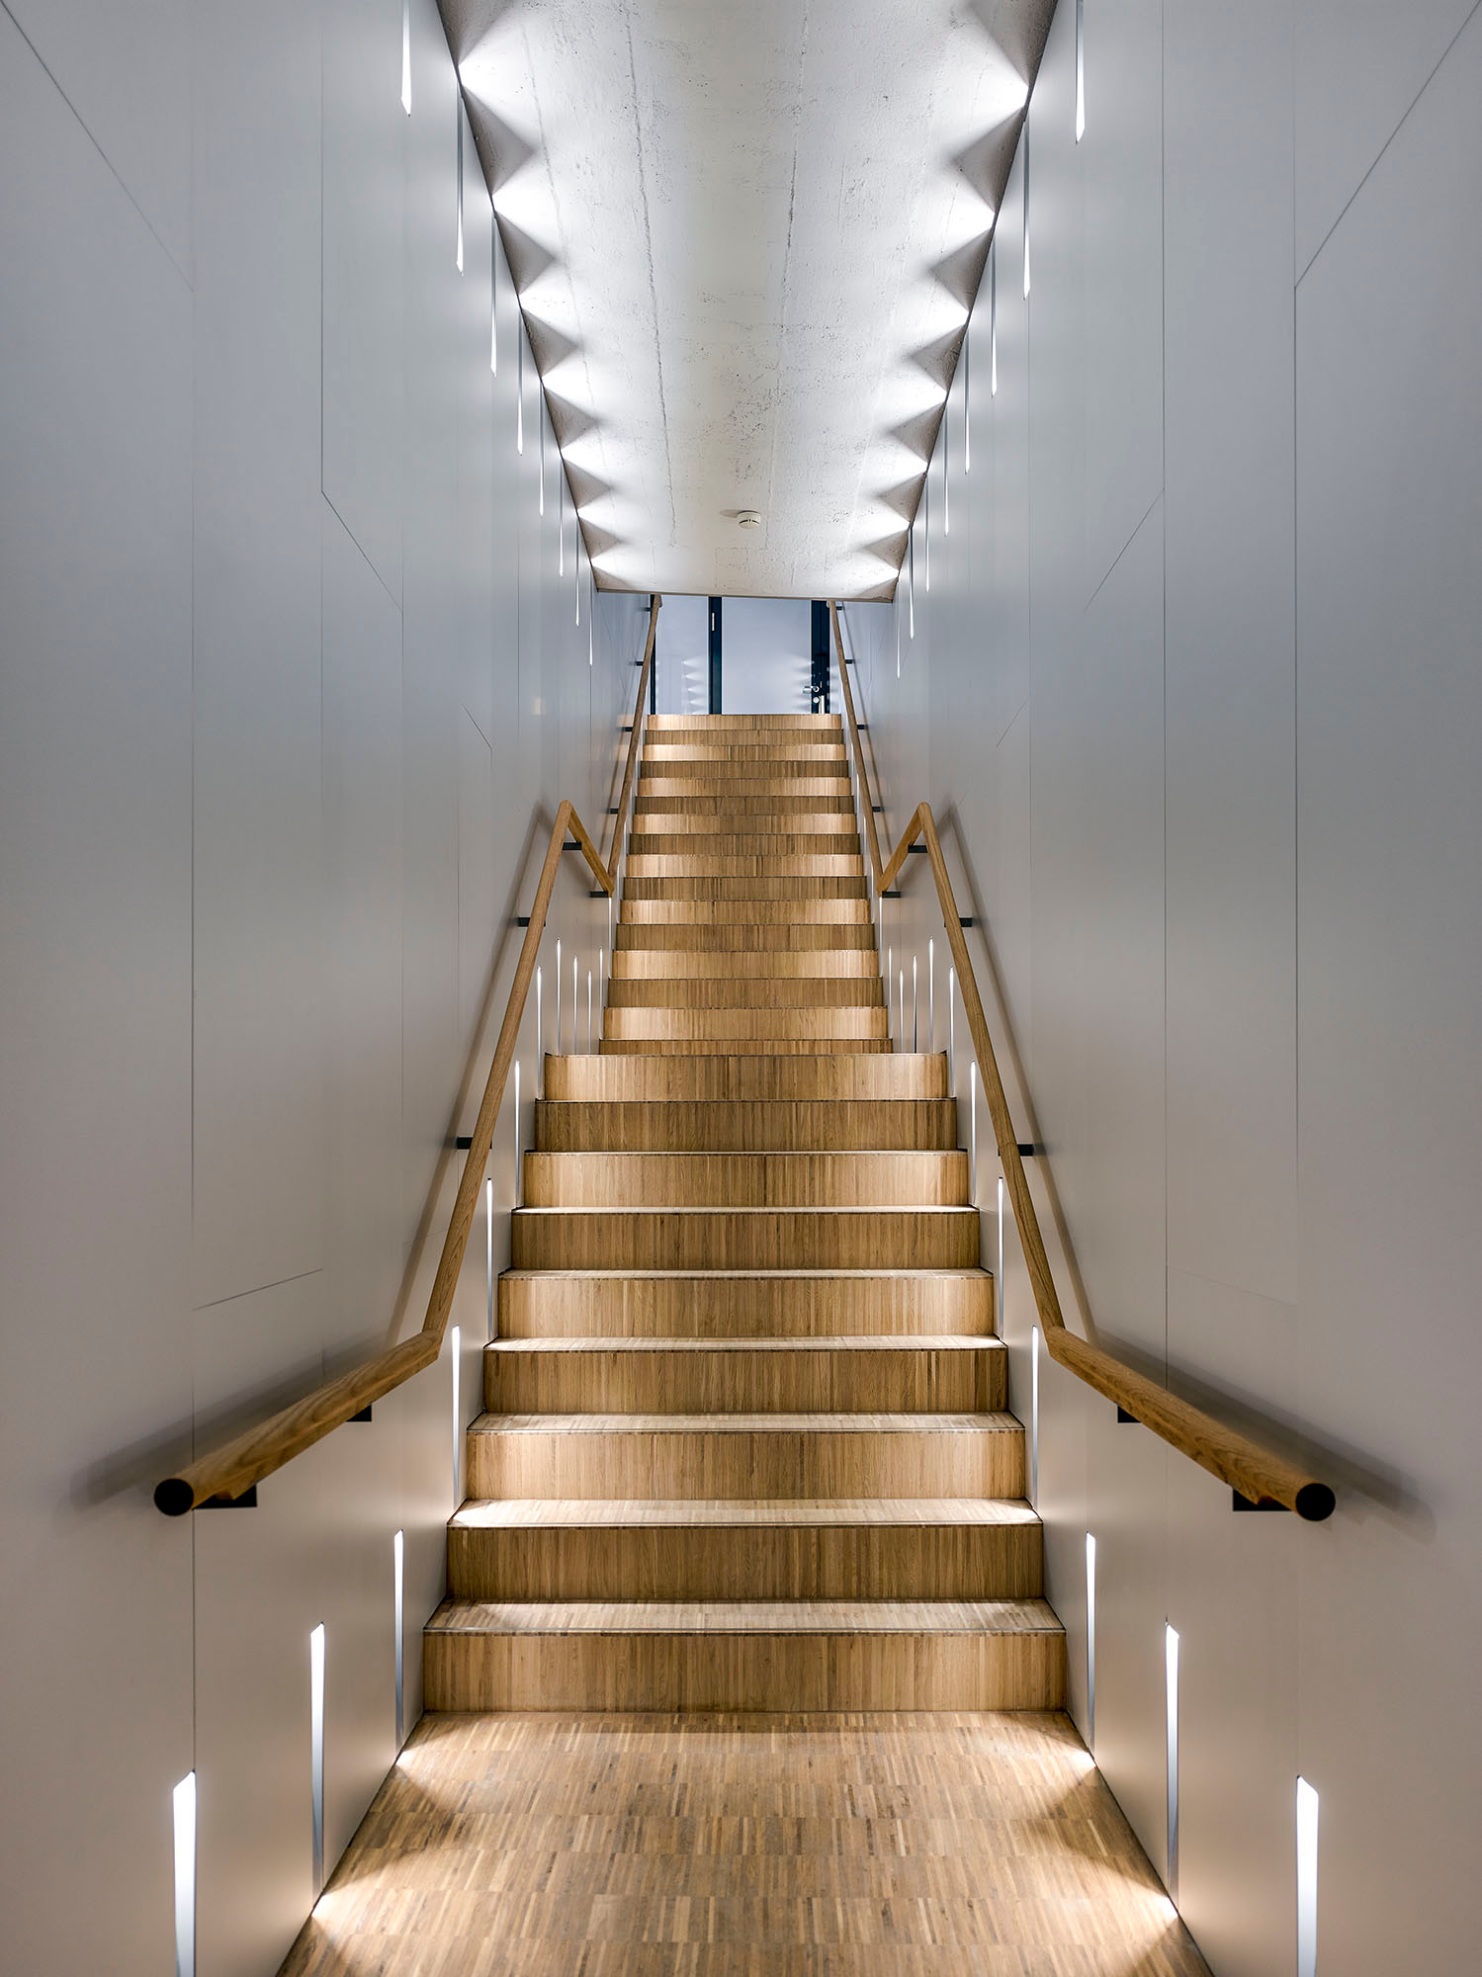 Handrail for stairs -  Schweiz